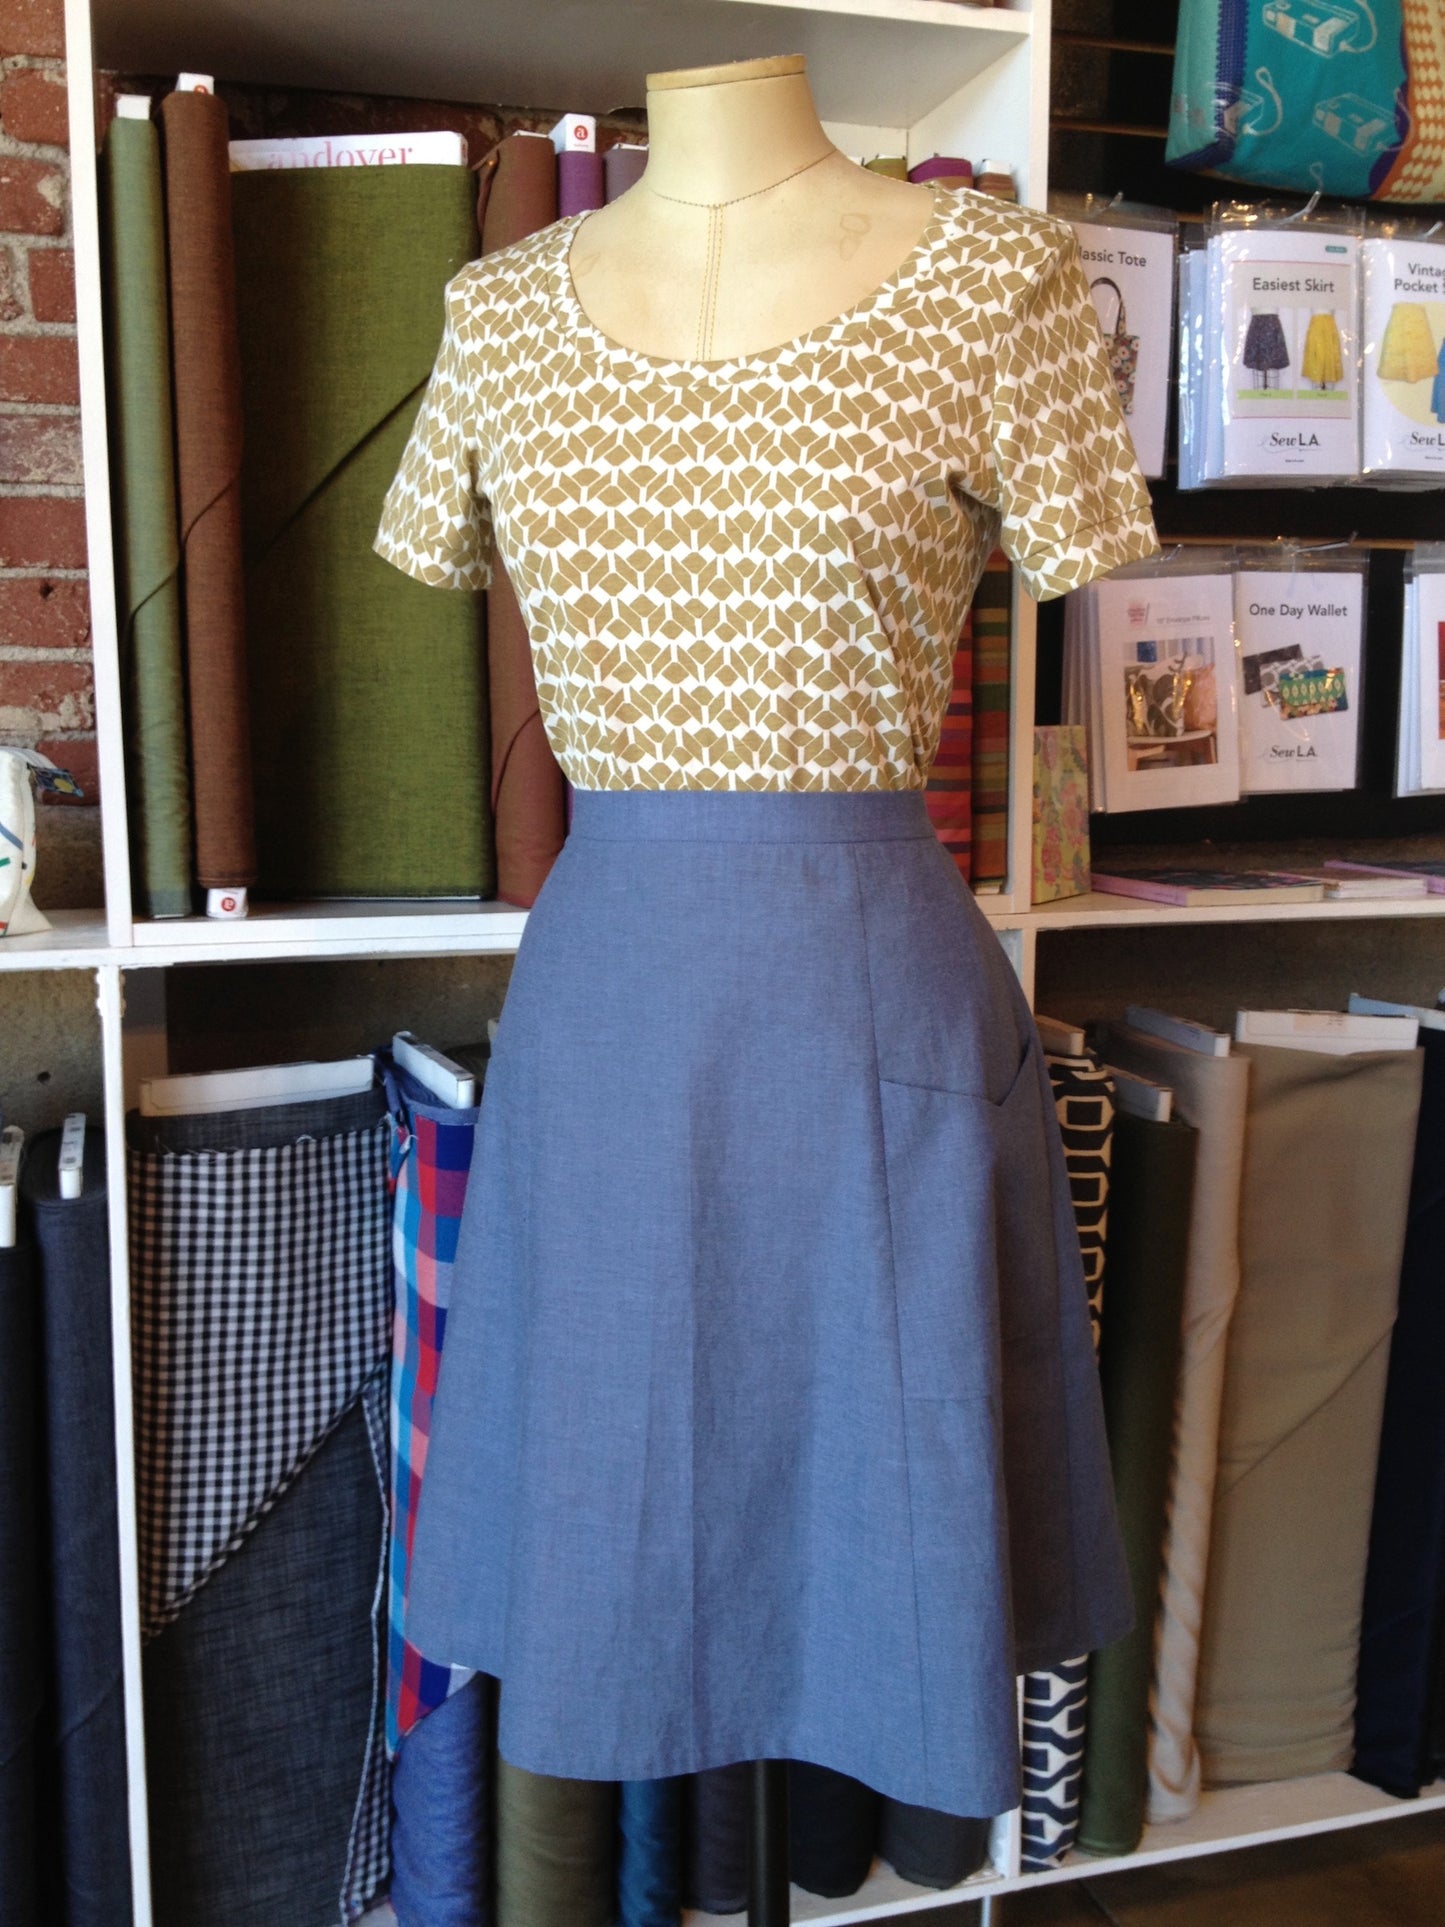 Sew L.A. Vintage Pocket Skirt Shaerie Mead Patternmaker